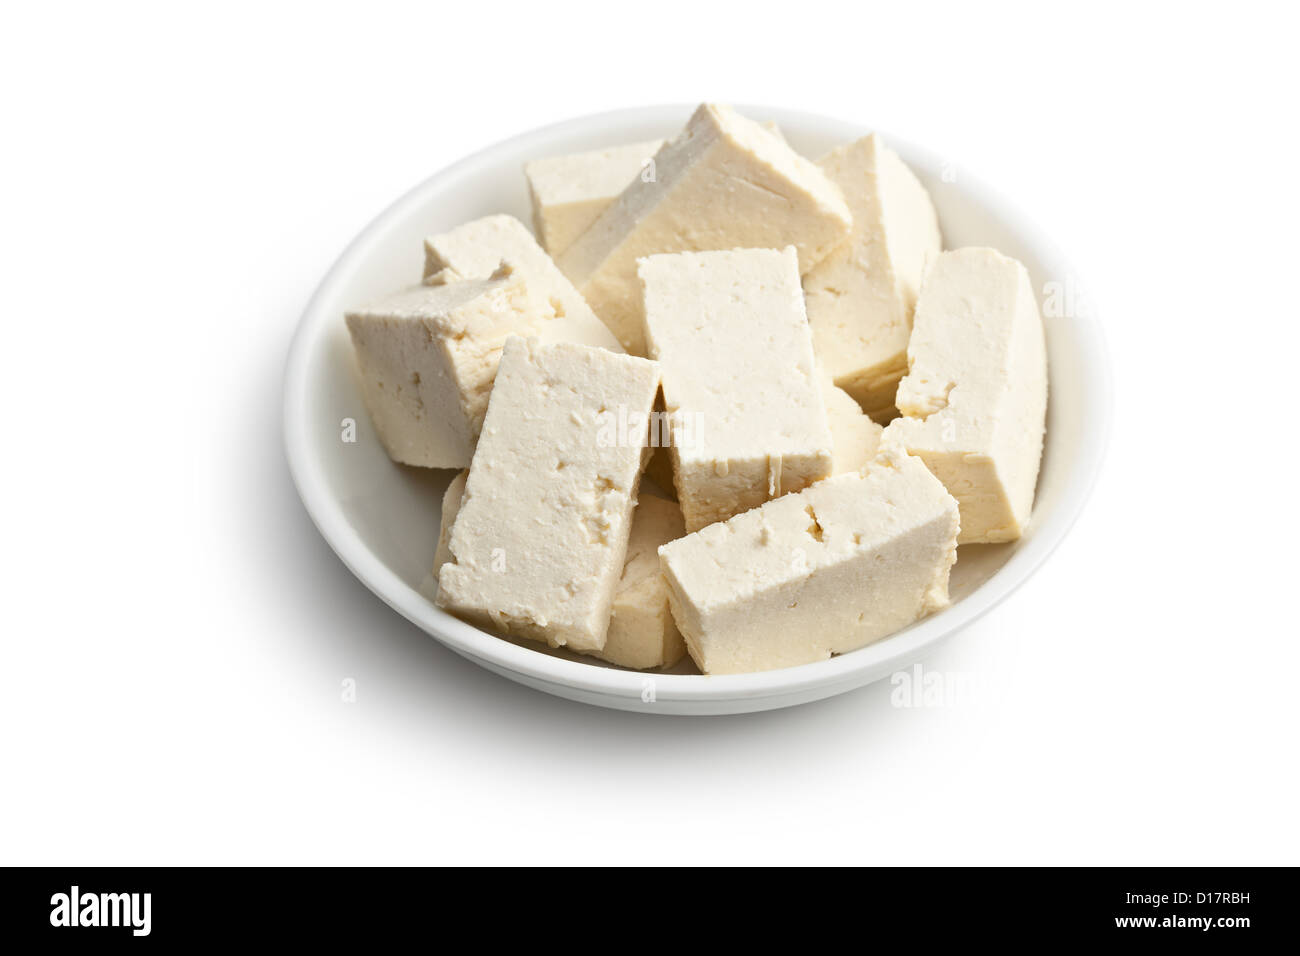 Le tofu dans un bol en céramique sur fond blanc Banque D'Images